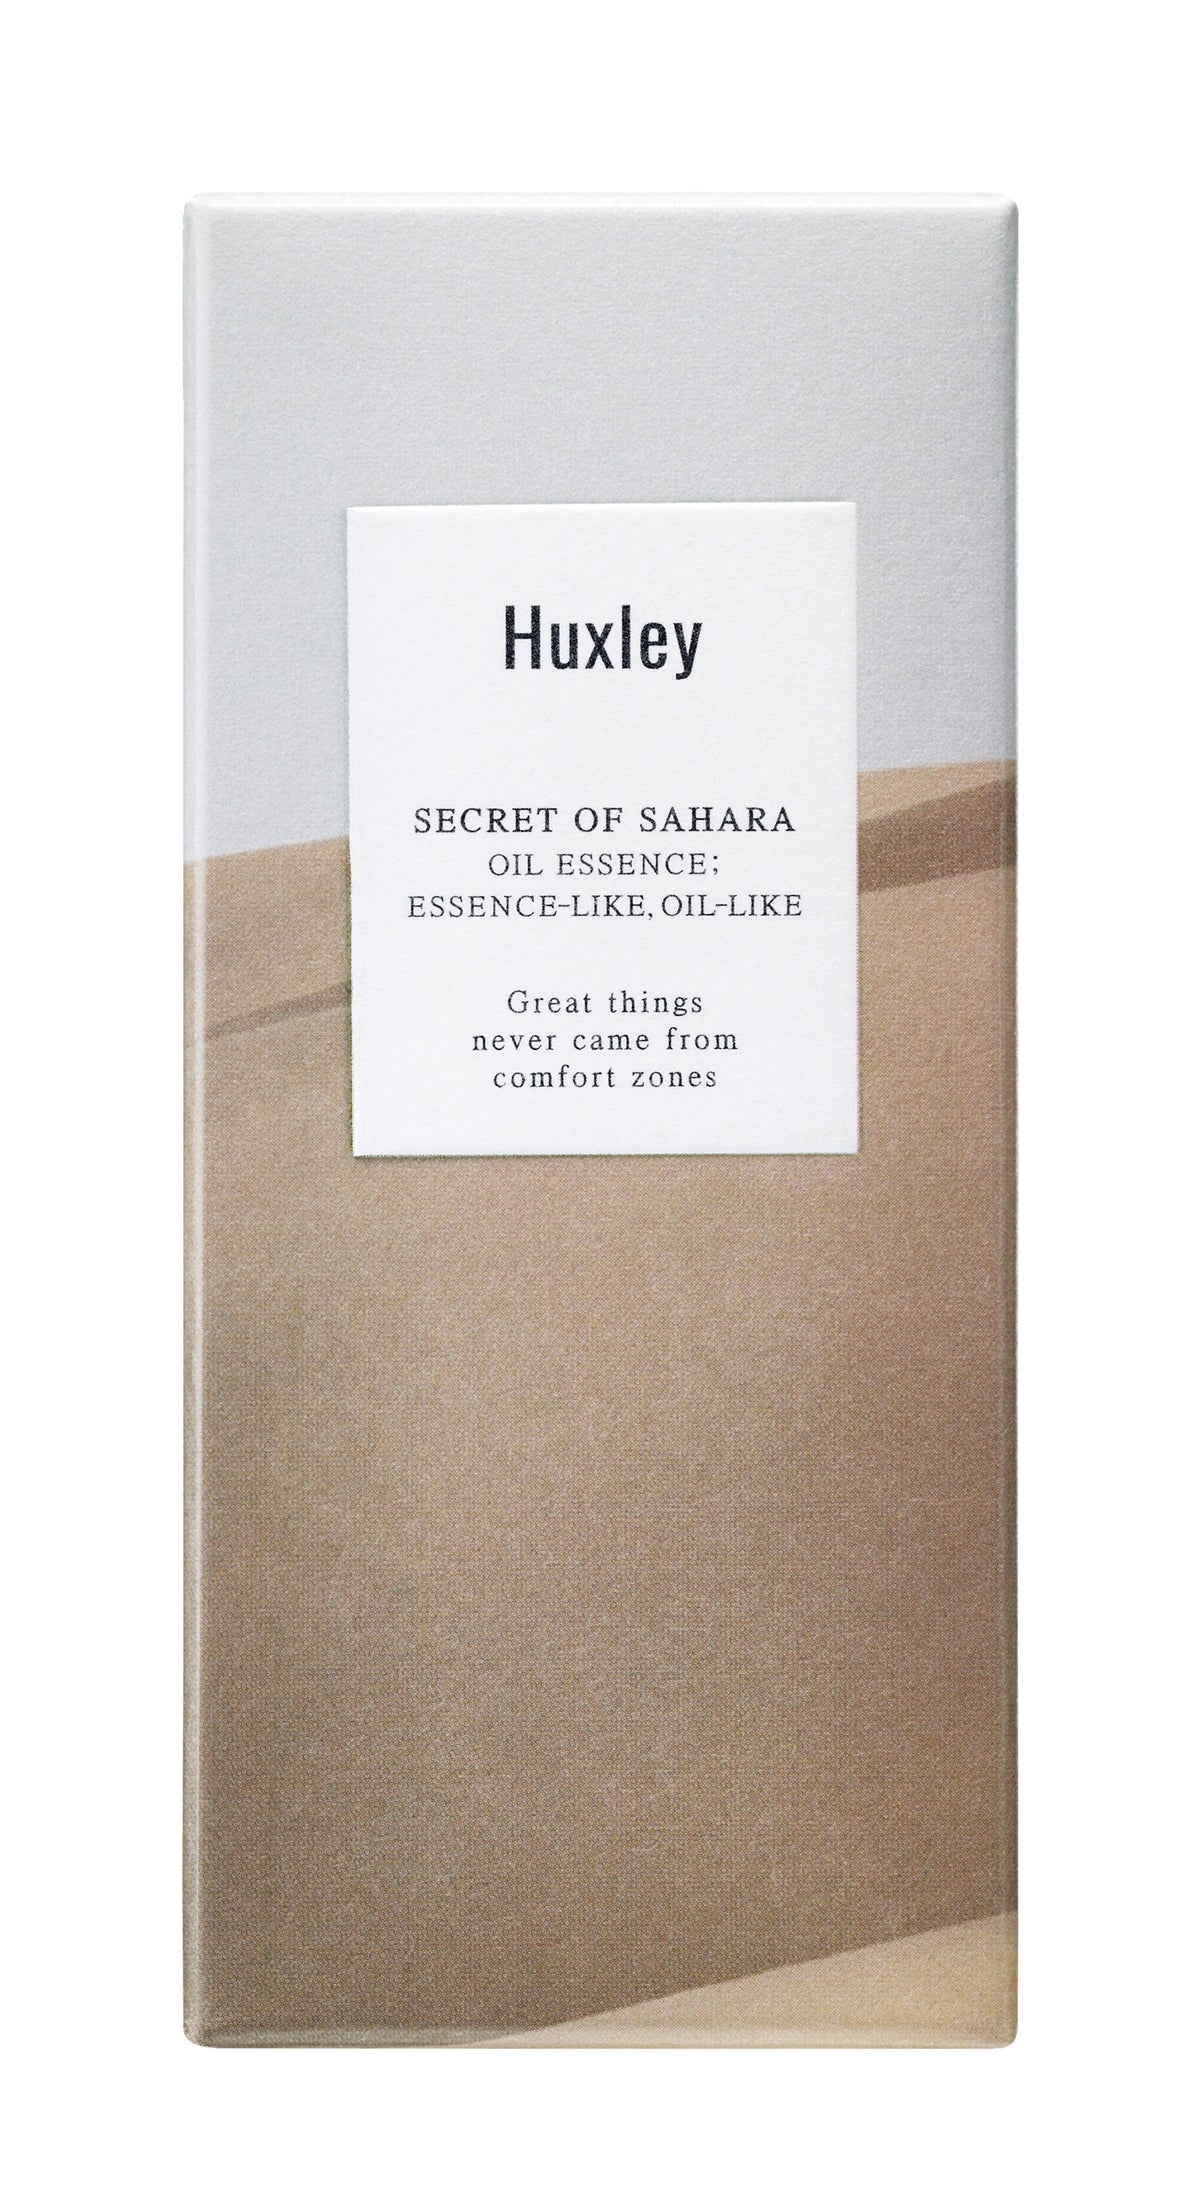 Huxley Oil Essence Essence-Like Oil-Like Packaging